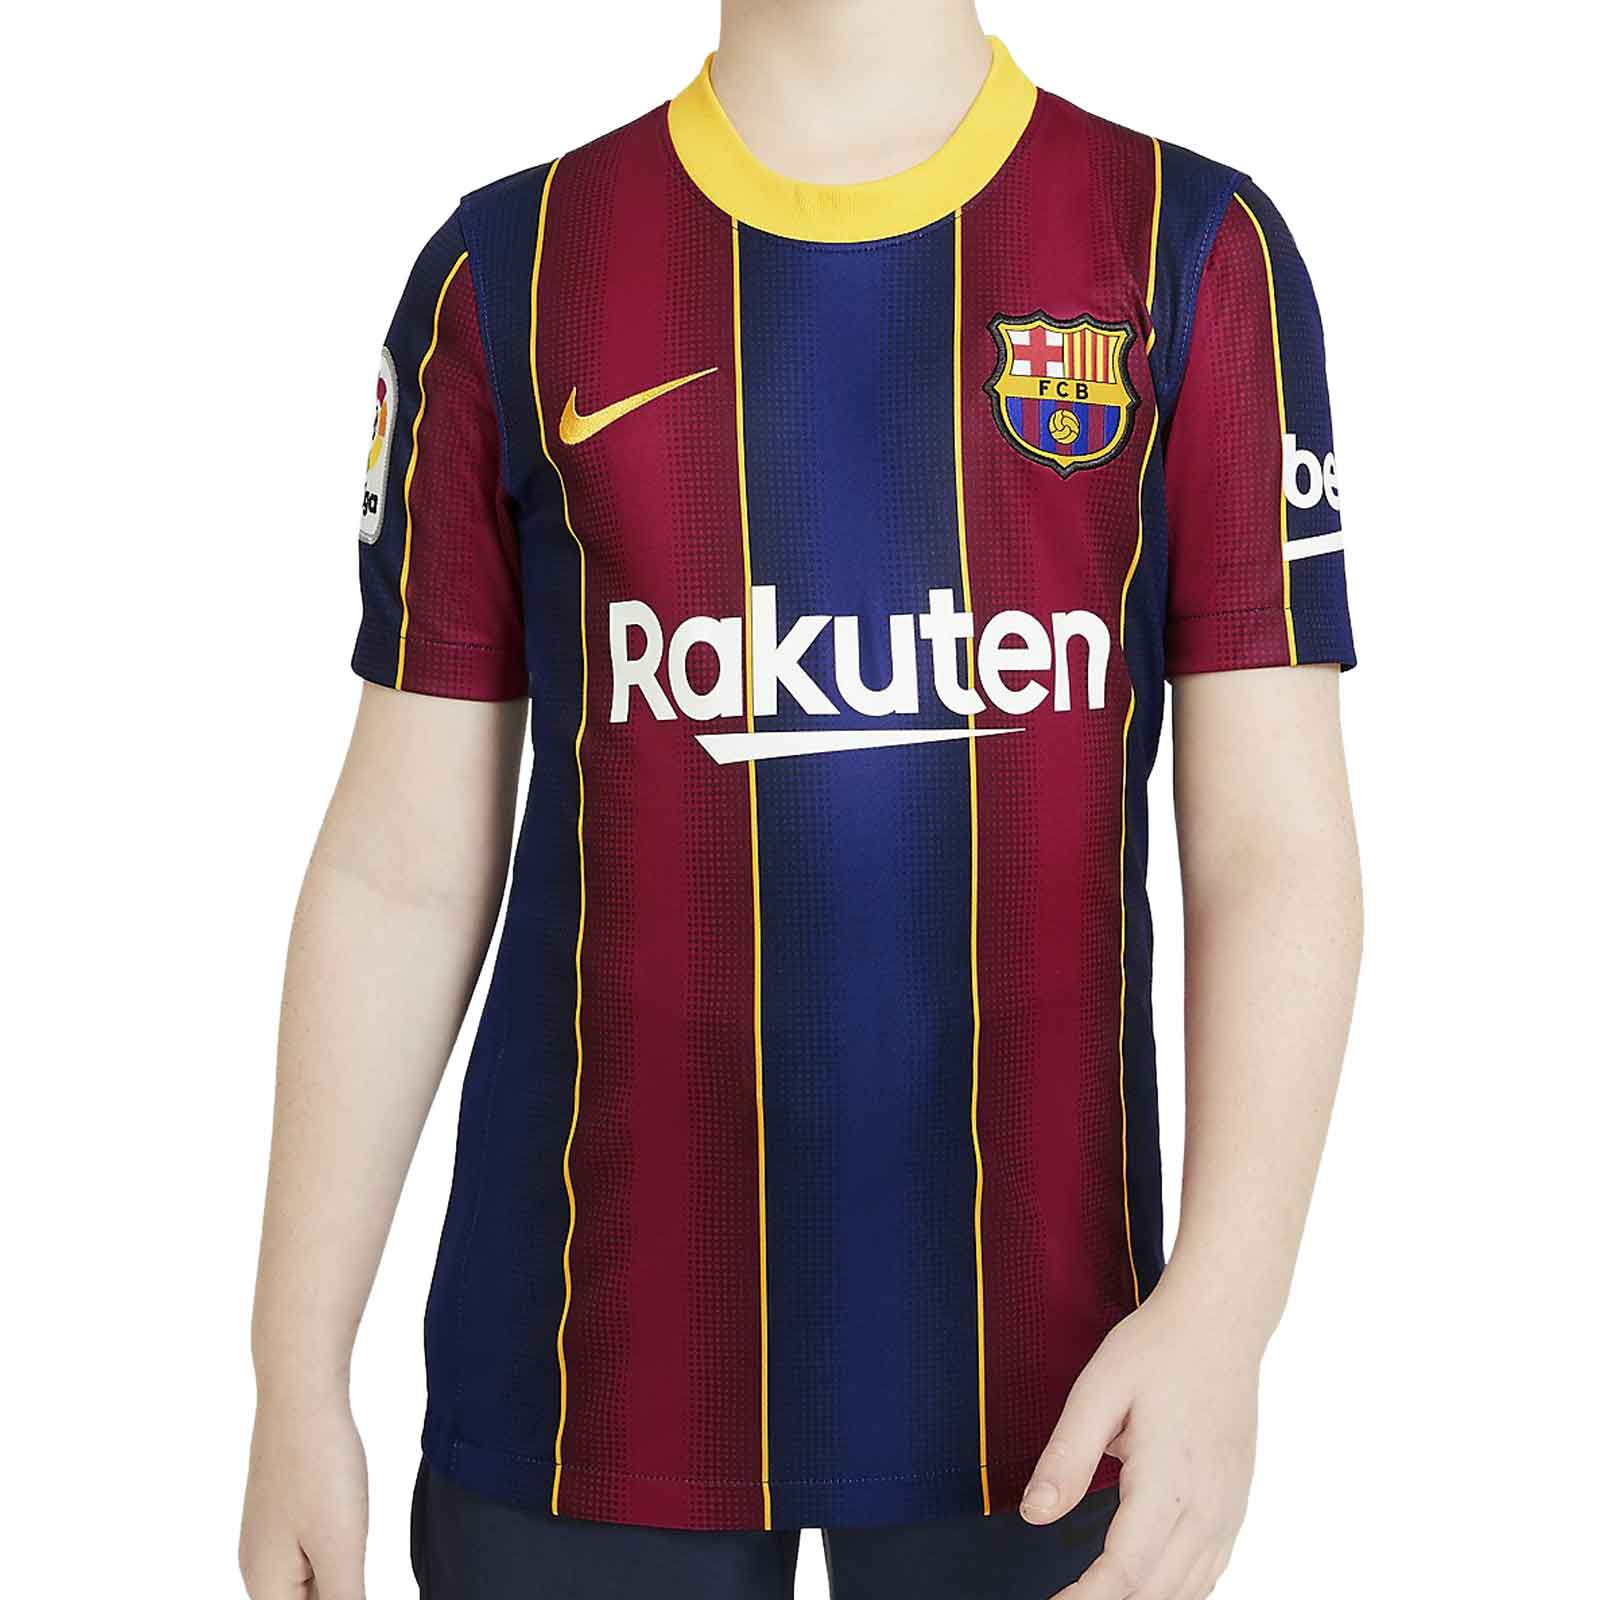 Temporada 2021/2022 Primera y Segunda Equipación Personalizable Replica Oficial Infantil Camiseta y Pantalón FC Barcelona Smarty Shirt2 Kit 